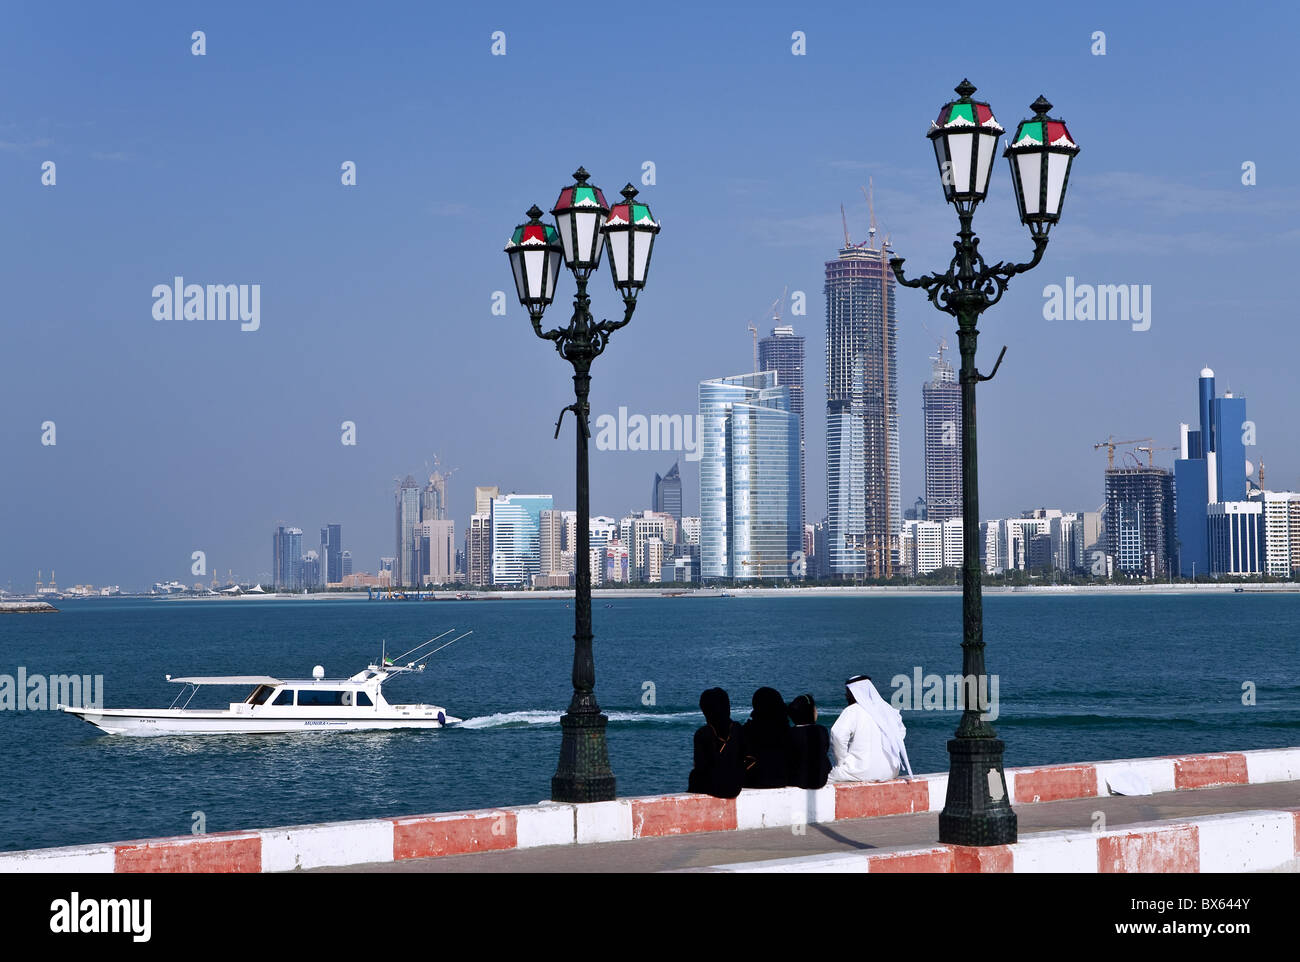 Sur les toits de la ville et de la célèbre Corniche à l'autre côté du port, à partir d'un quai, Abu Dhabi, Émirats arabes unis, Moyen Orient Banque D'Images